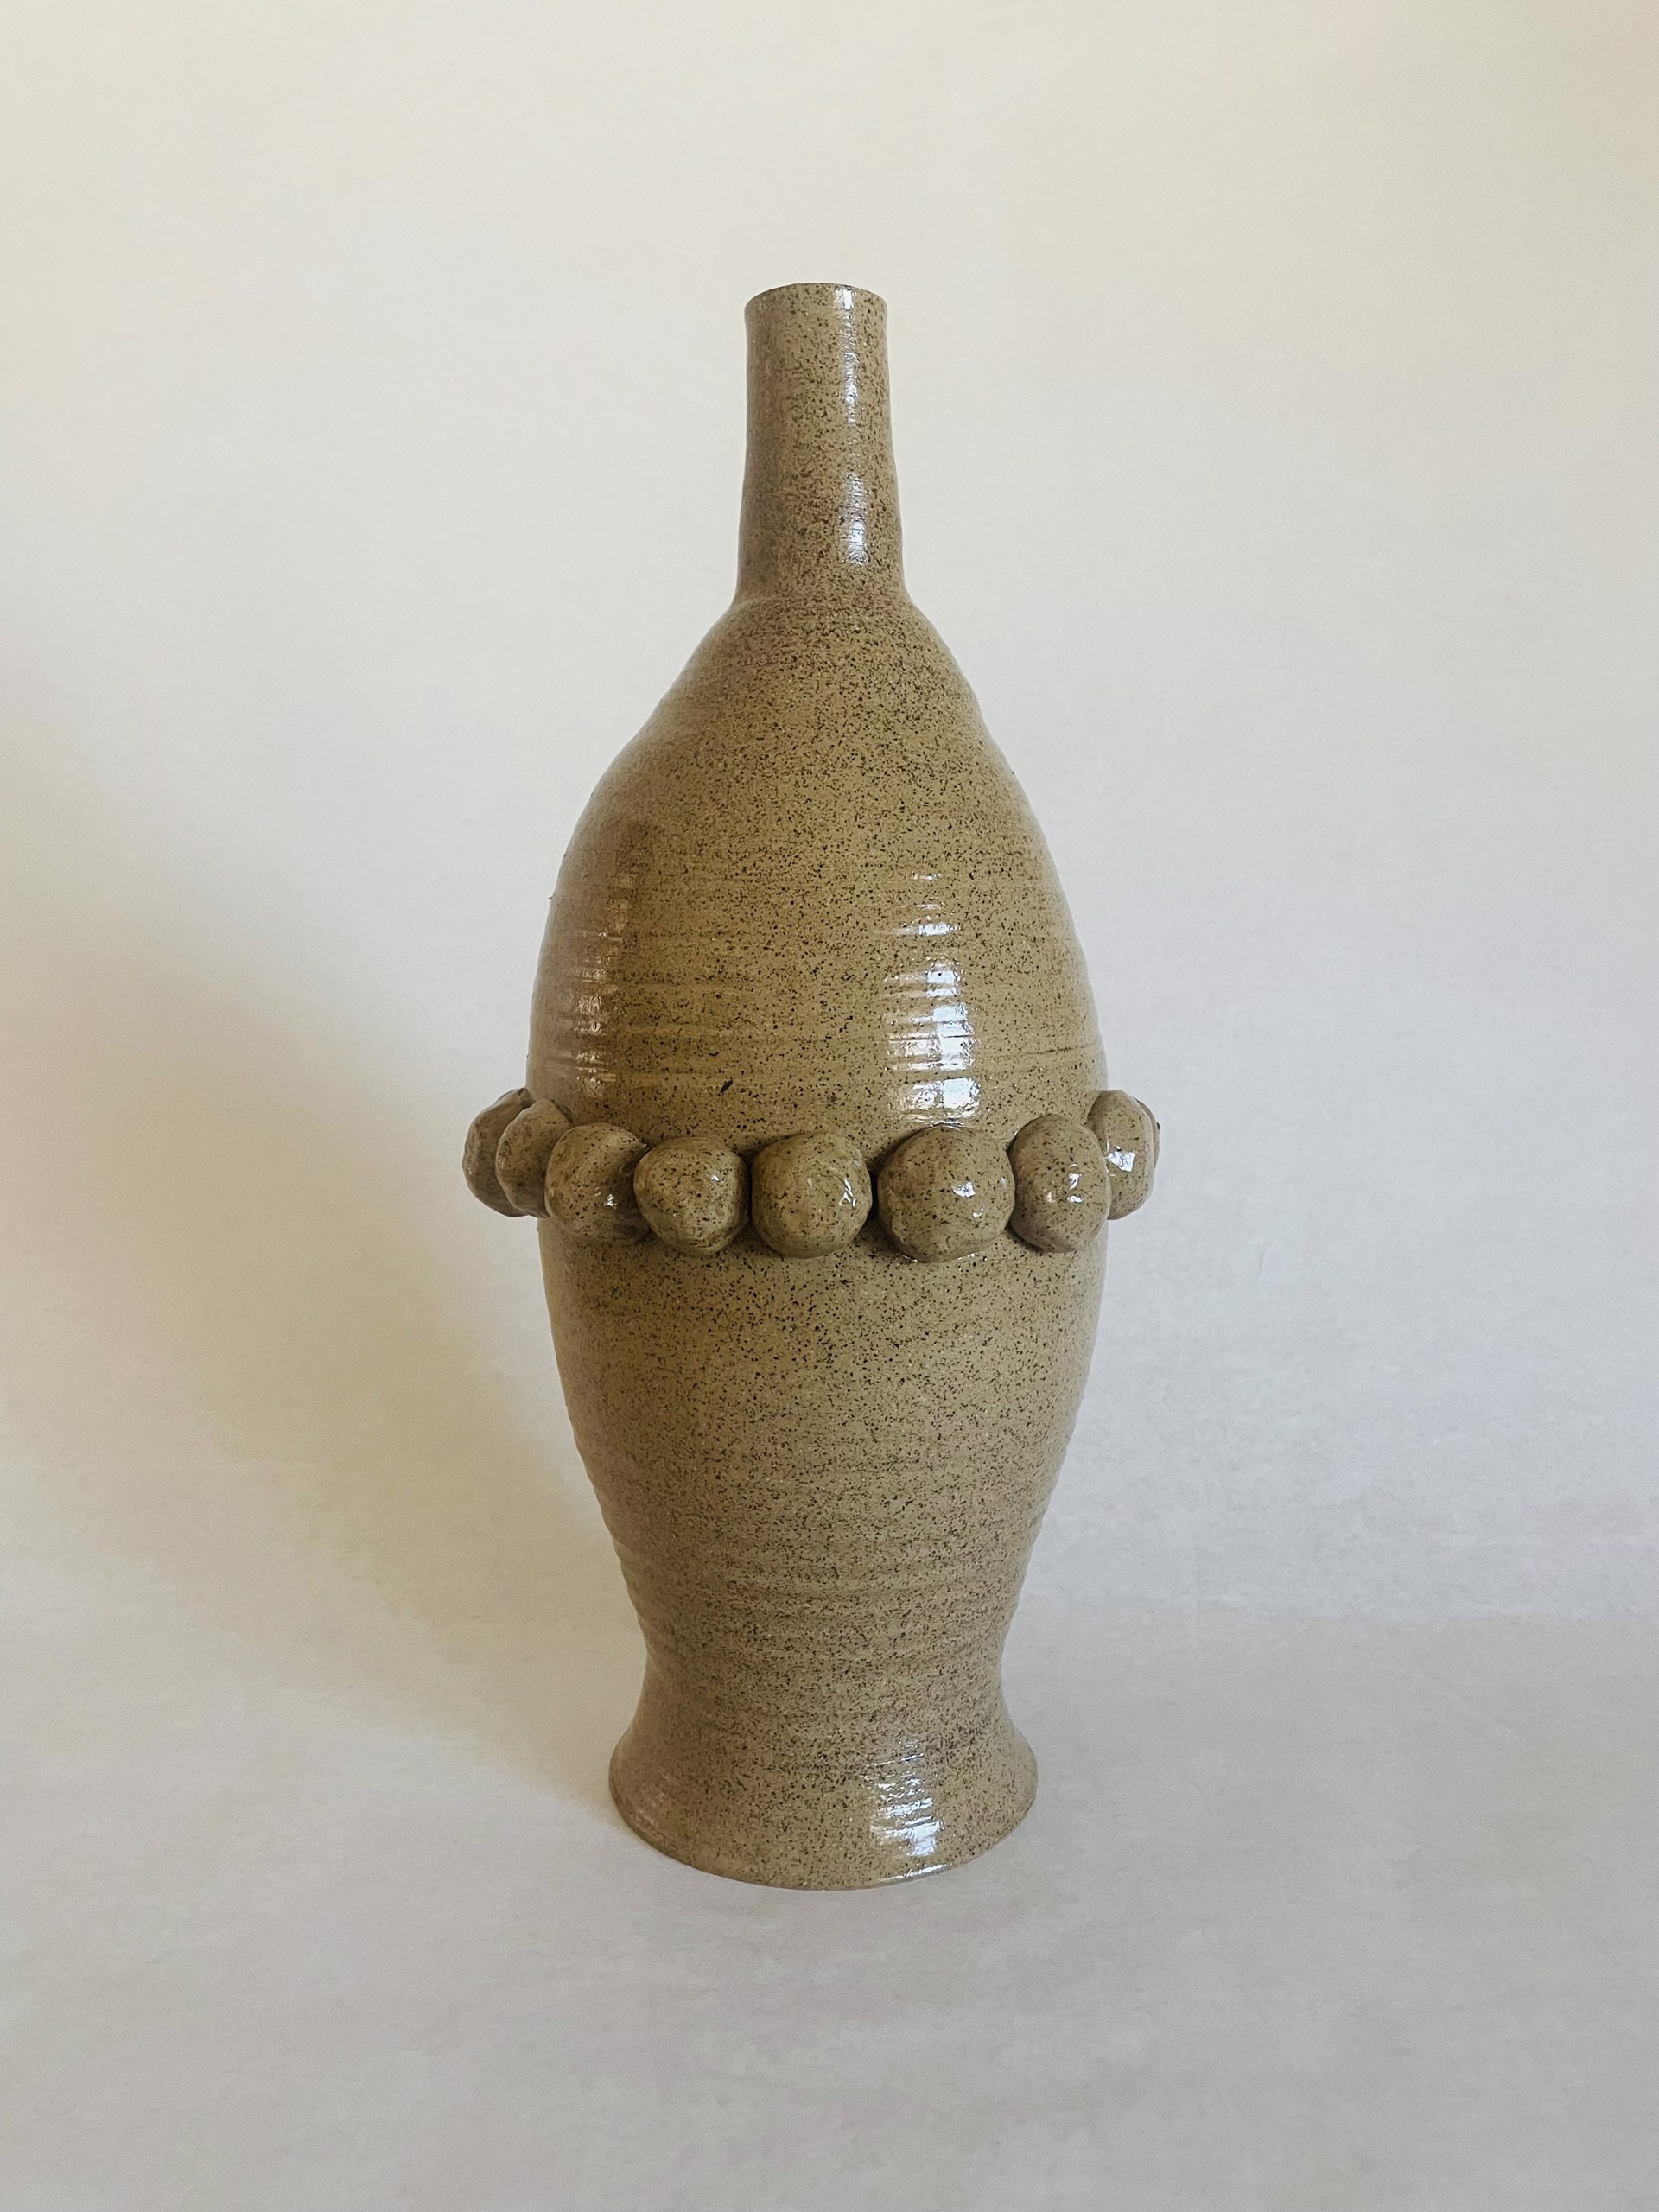 WT Vase 6 by Sarah Hummel Jones